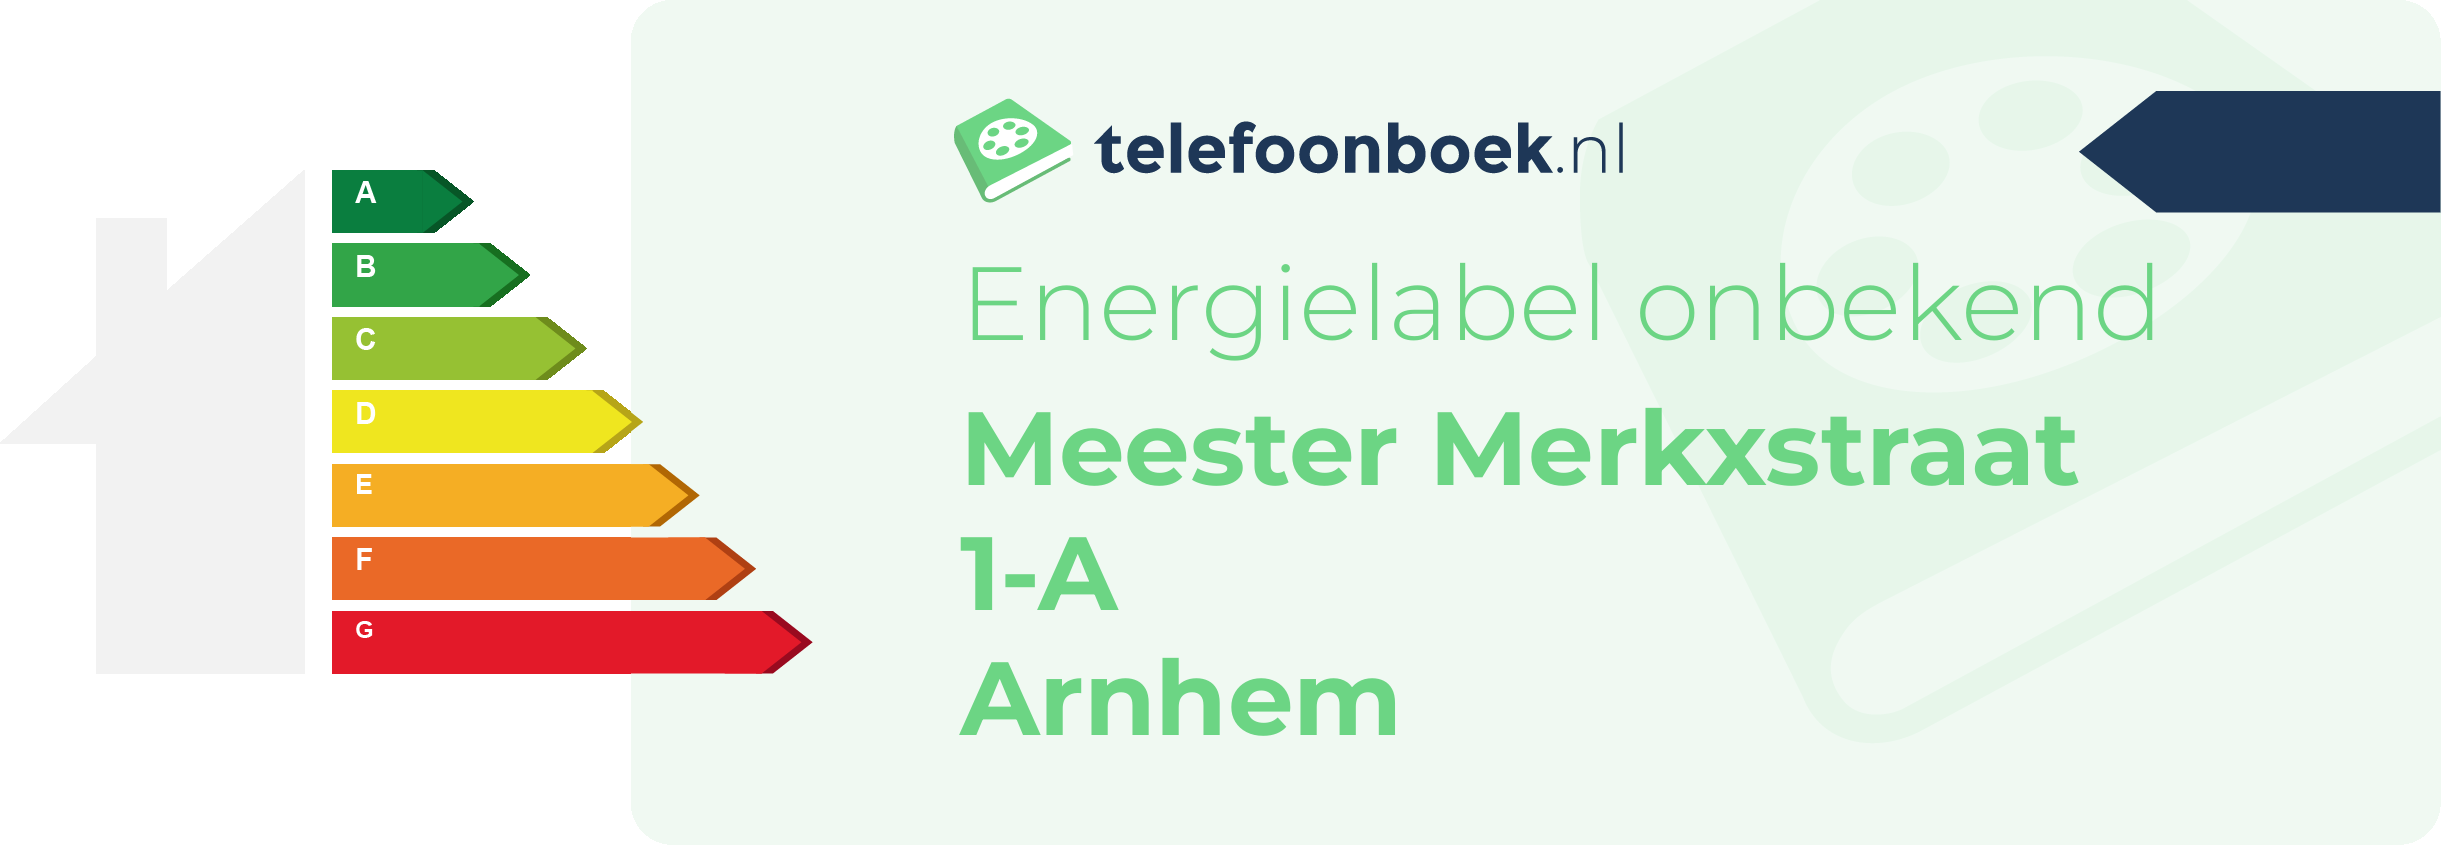 Energielabel Meester Merkxstraat 1-A Arnhem